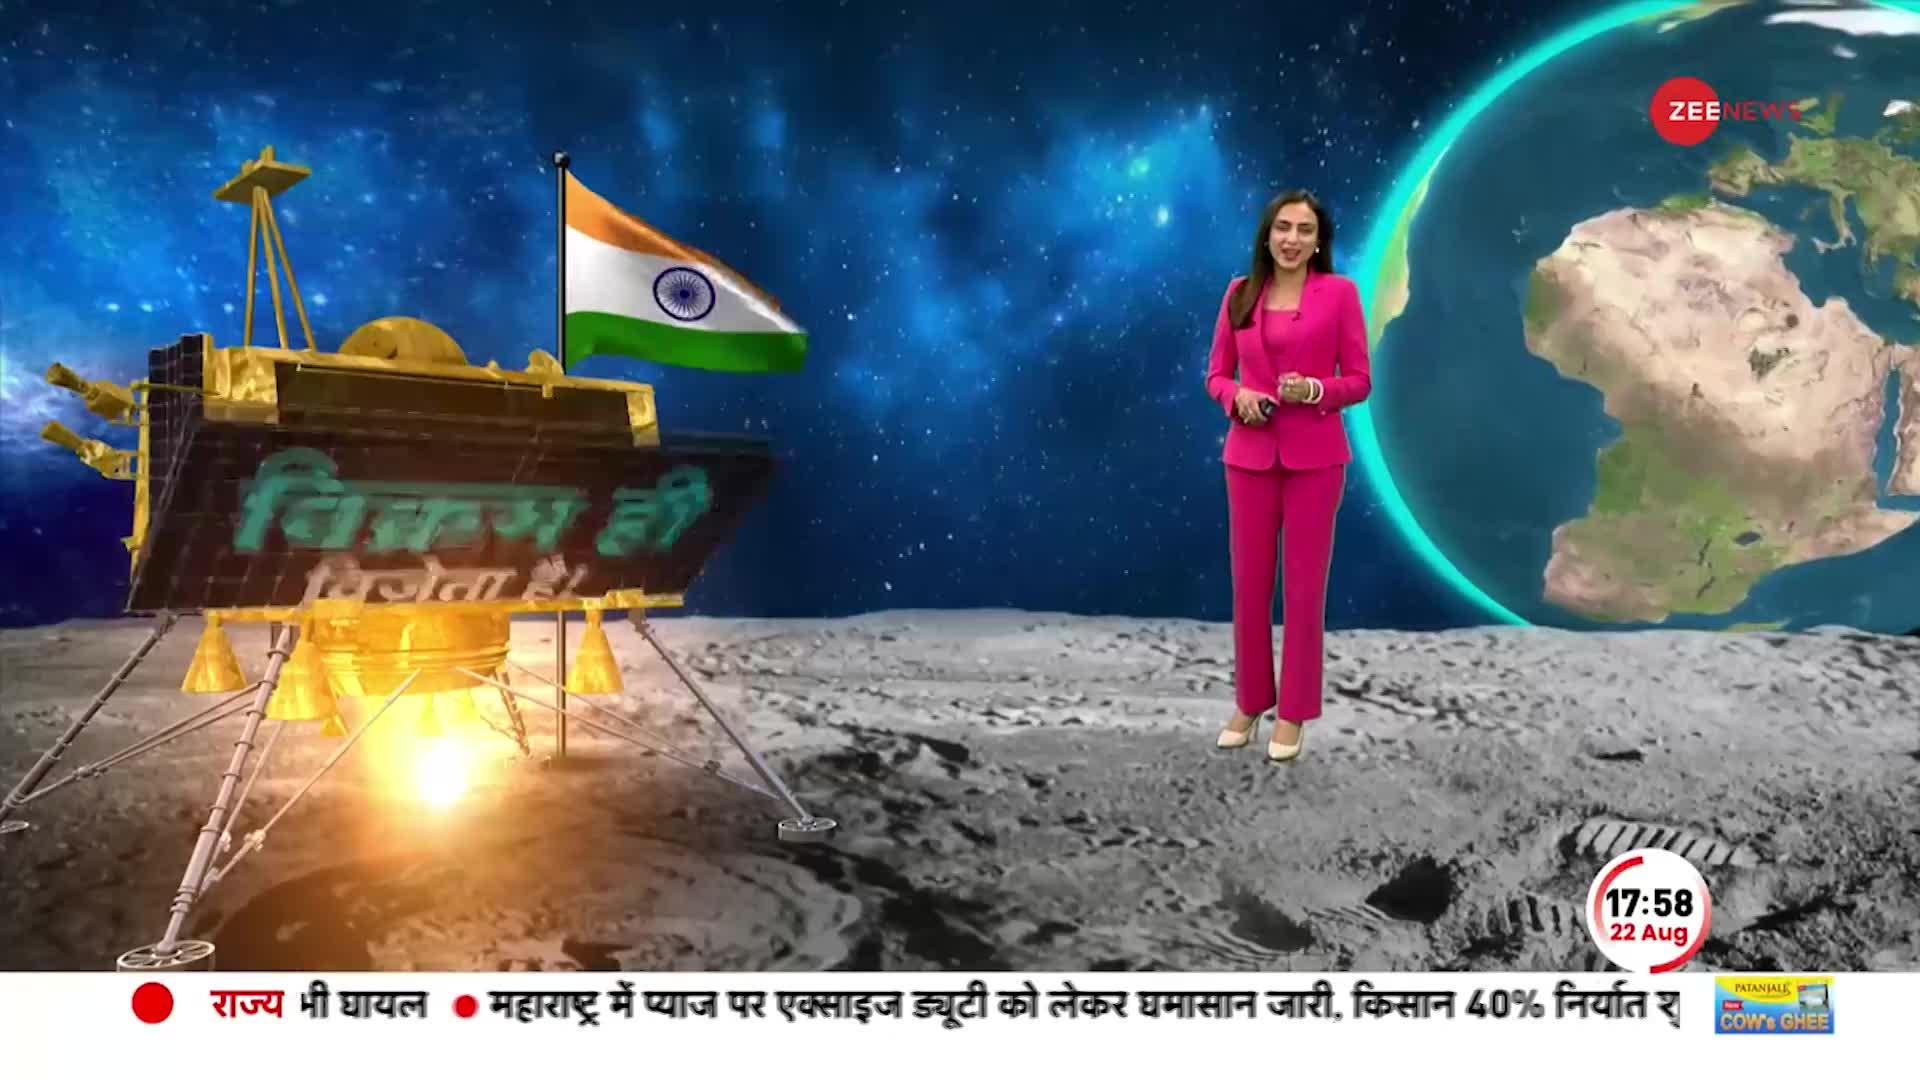 Deshhit: Chandrayaan-3 की Landding के साथ भारत अंतरिक्ष में इतिहास रच देगा। ISRO moon mission